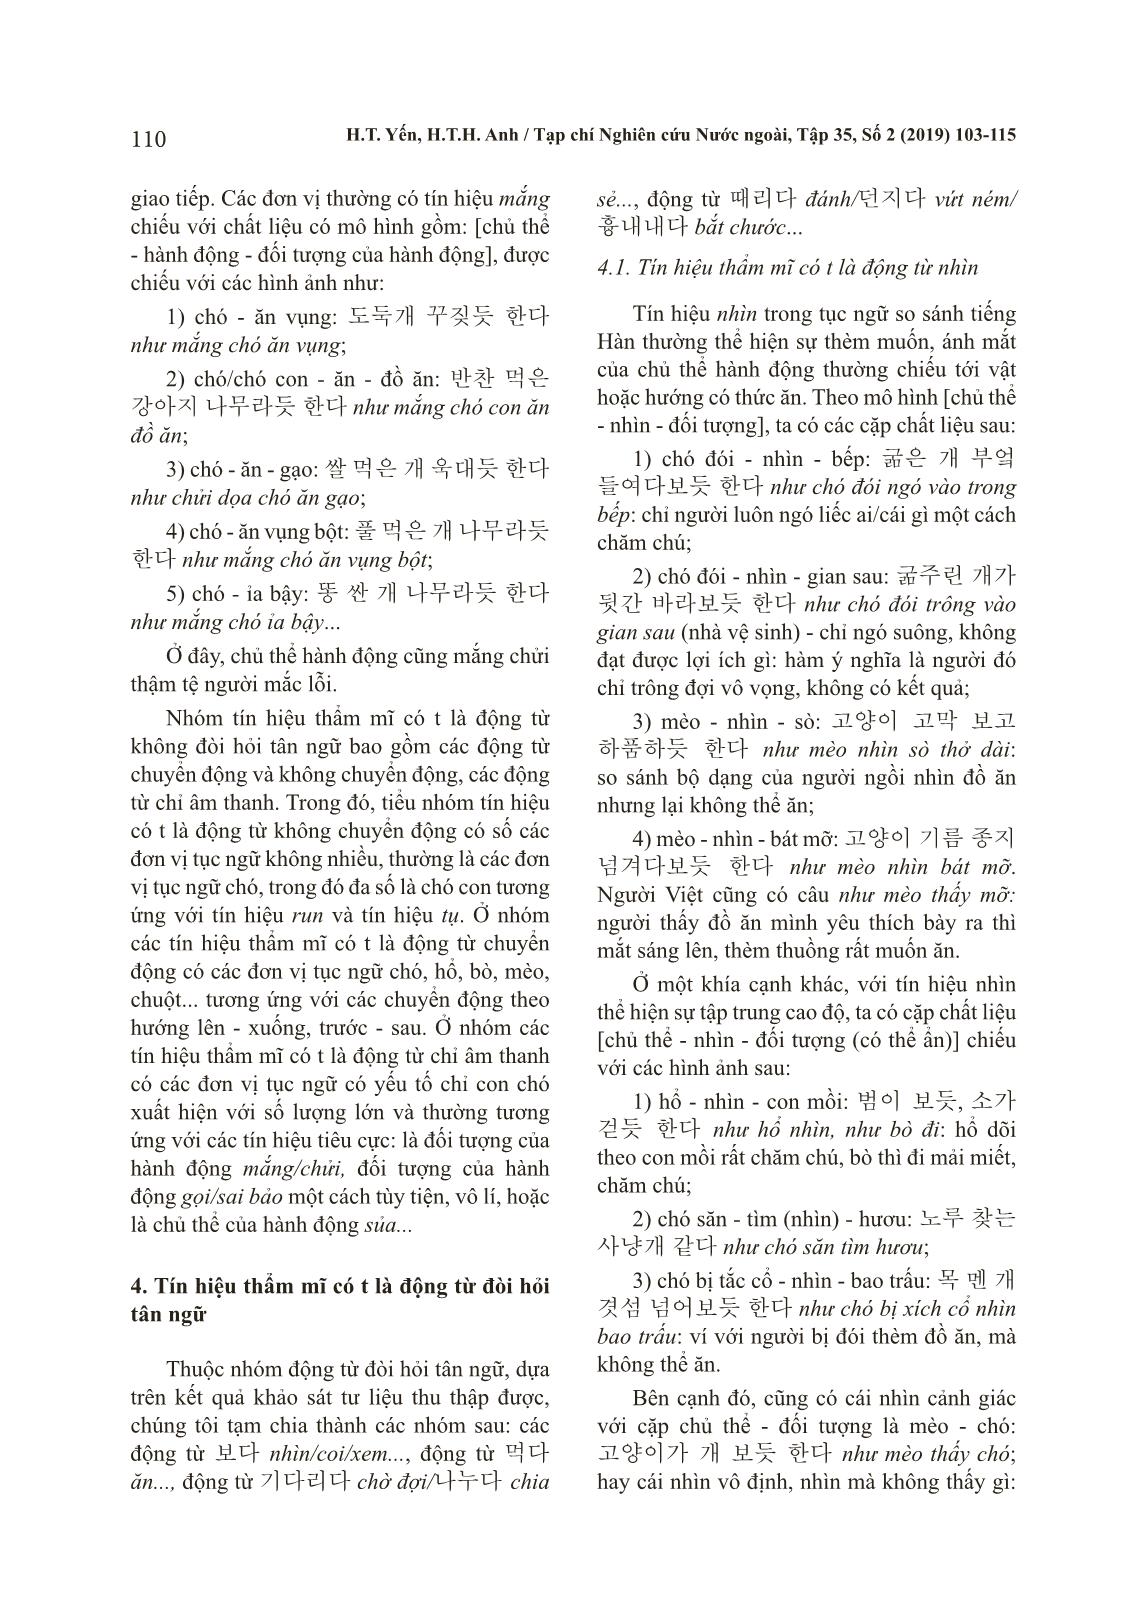 Đặc trưng tín hiệu thẩm mĩ của tục ngữ so sánh tiếng Hàn có yếu tố chỉ con giáp trang 8